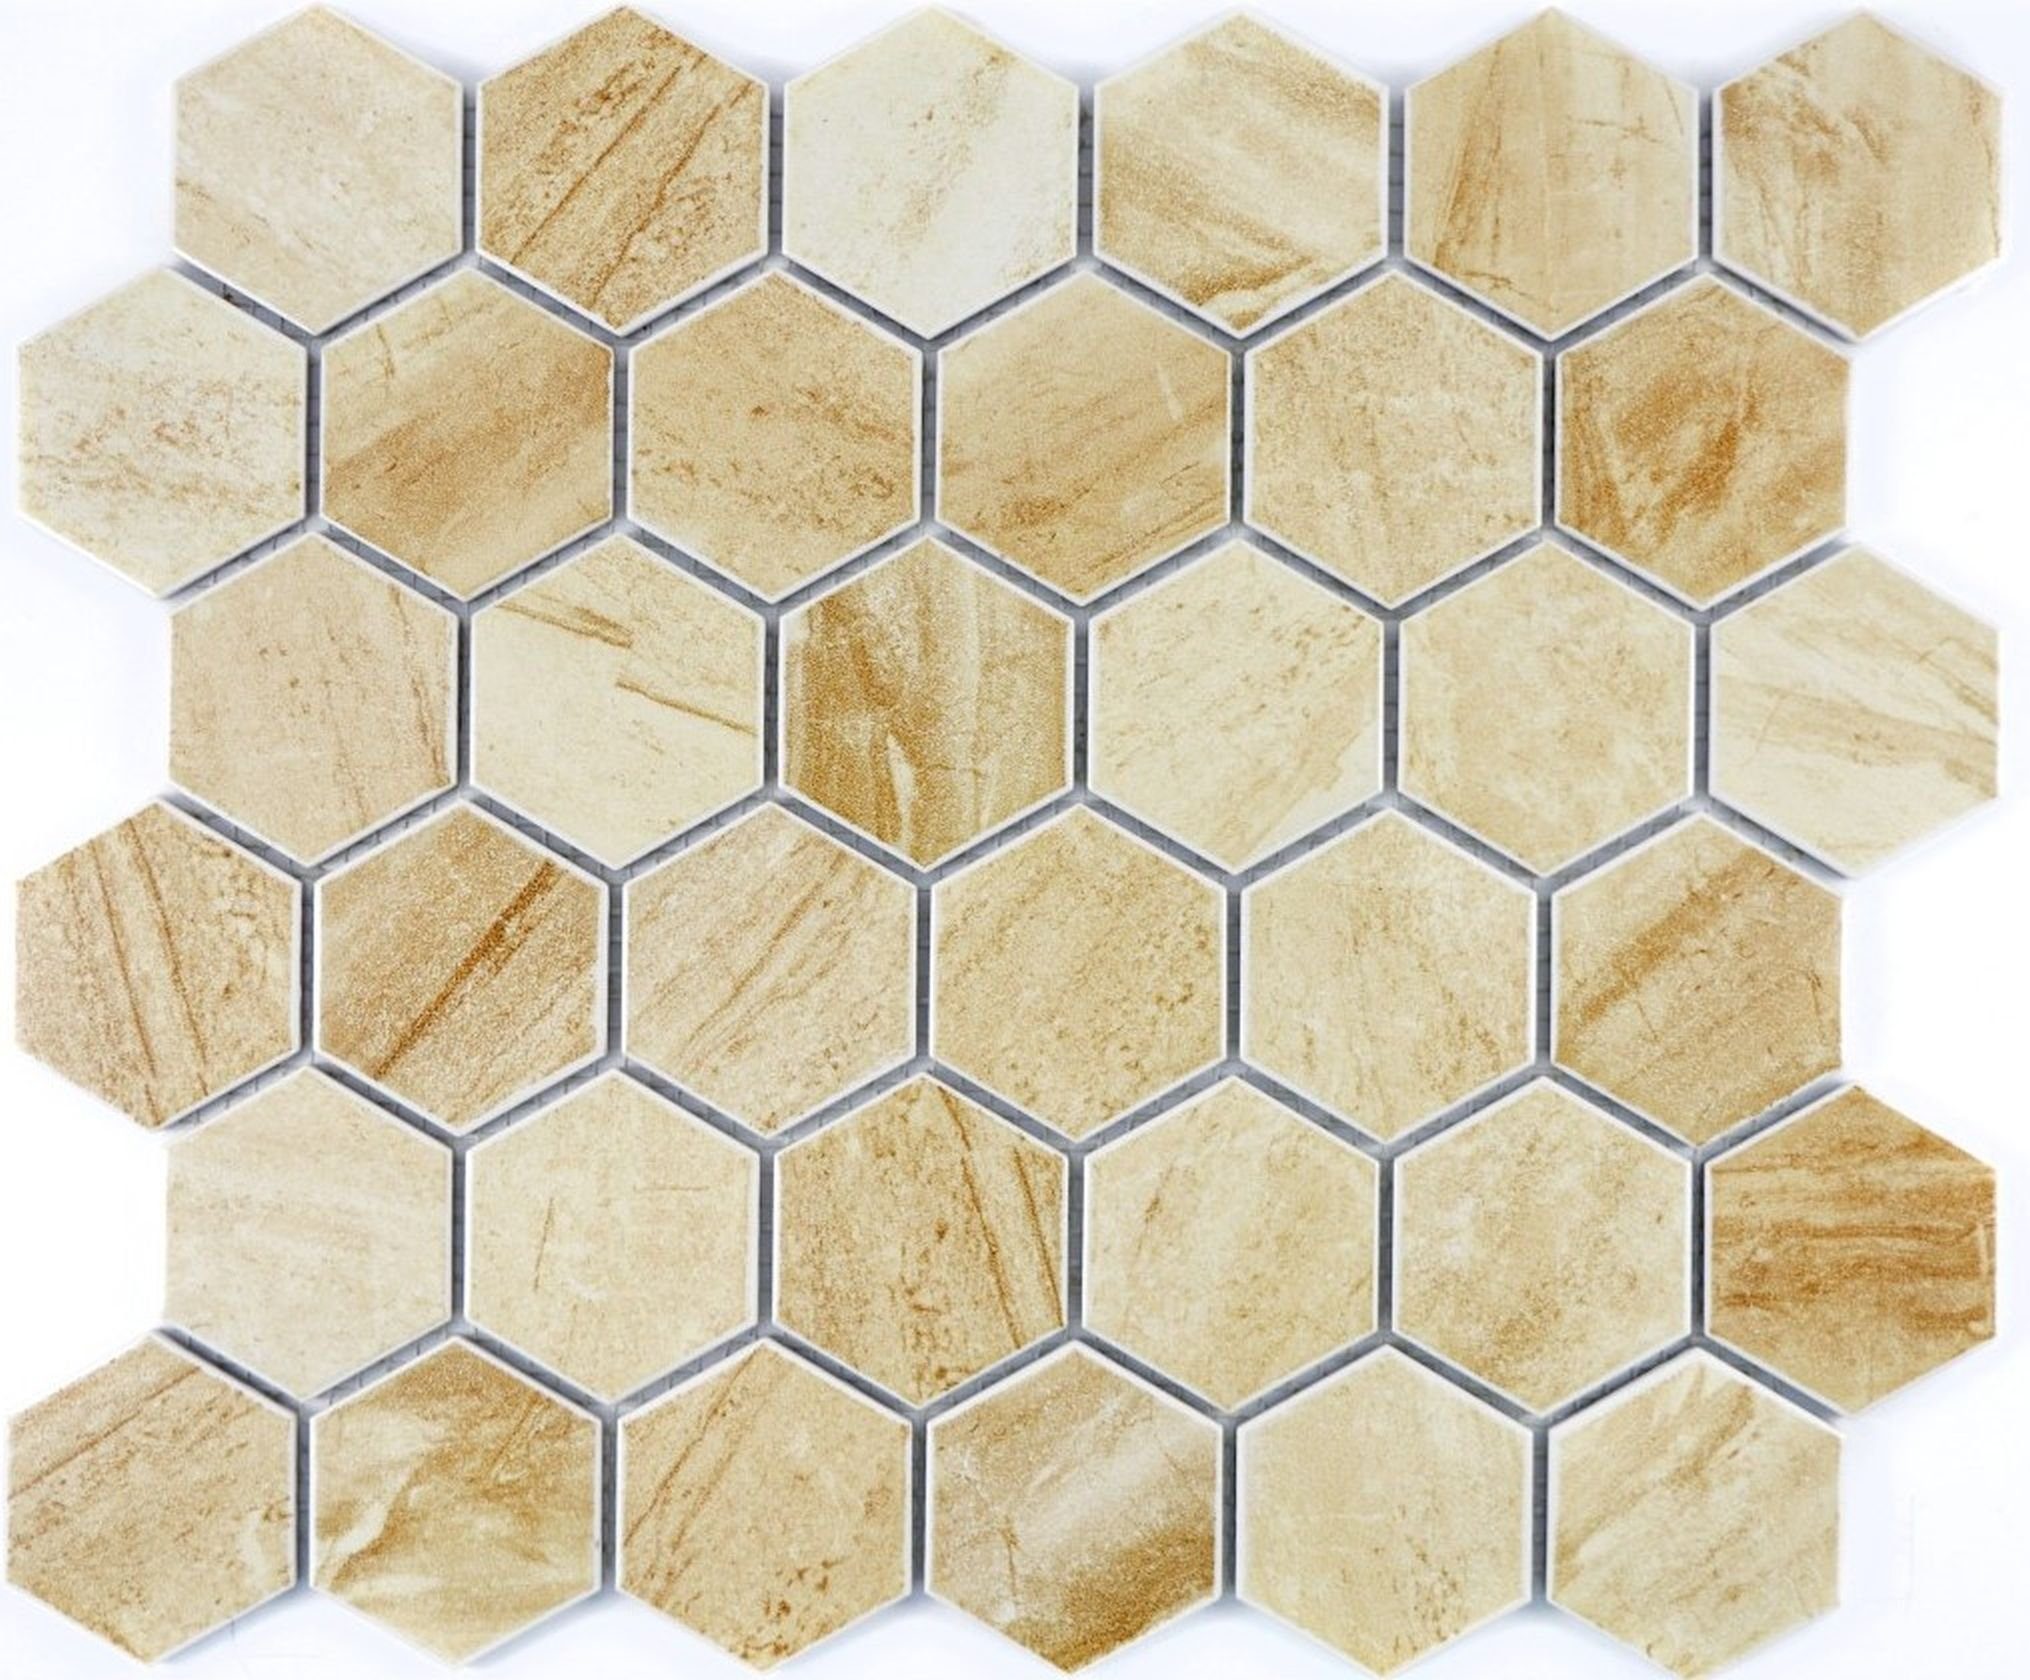 Mosani Mosaikfliesen Sechseck Mosaik Fliese Keramik Travertin beige matt Küche Bad